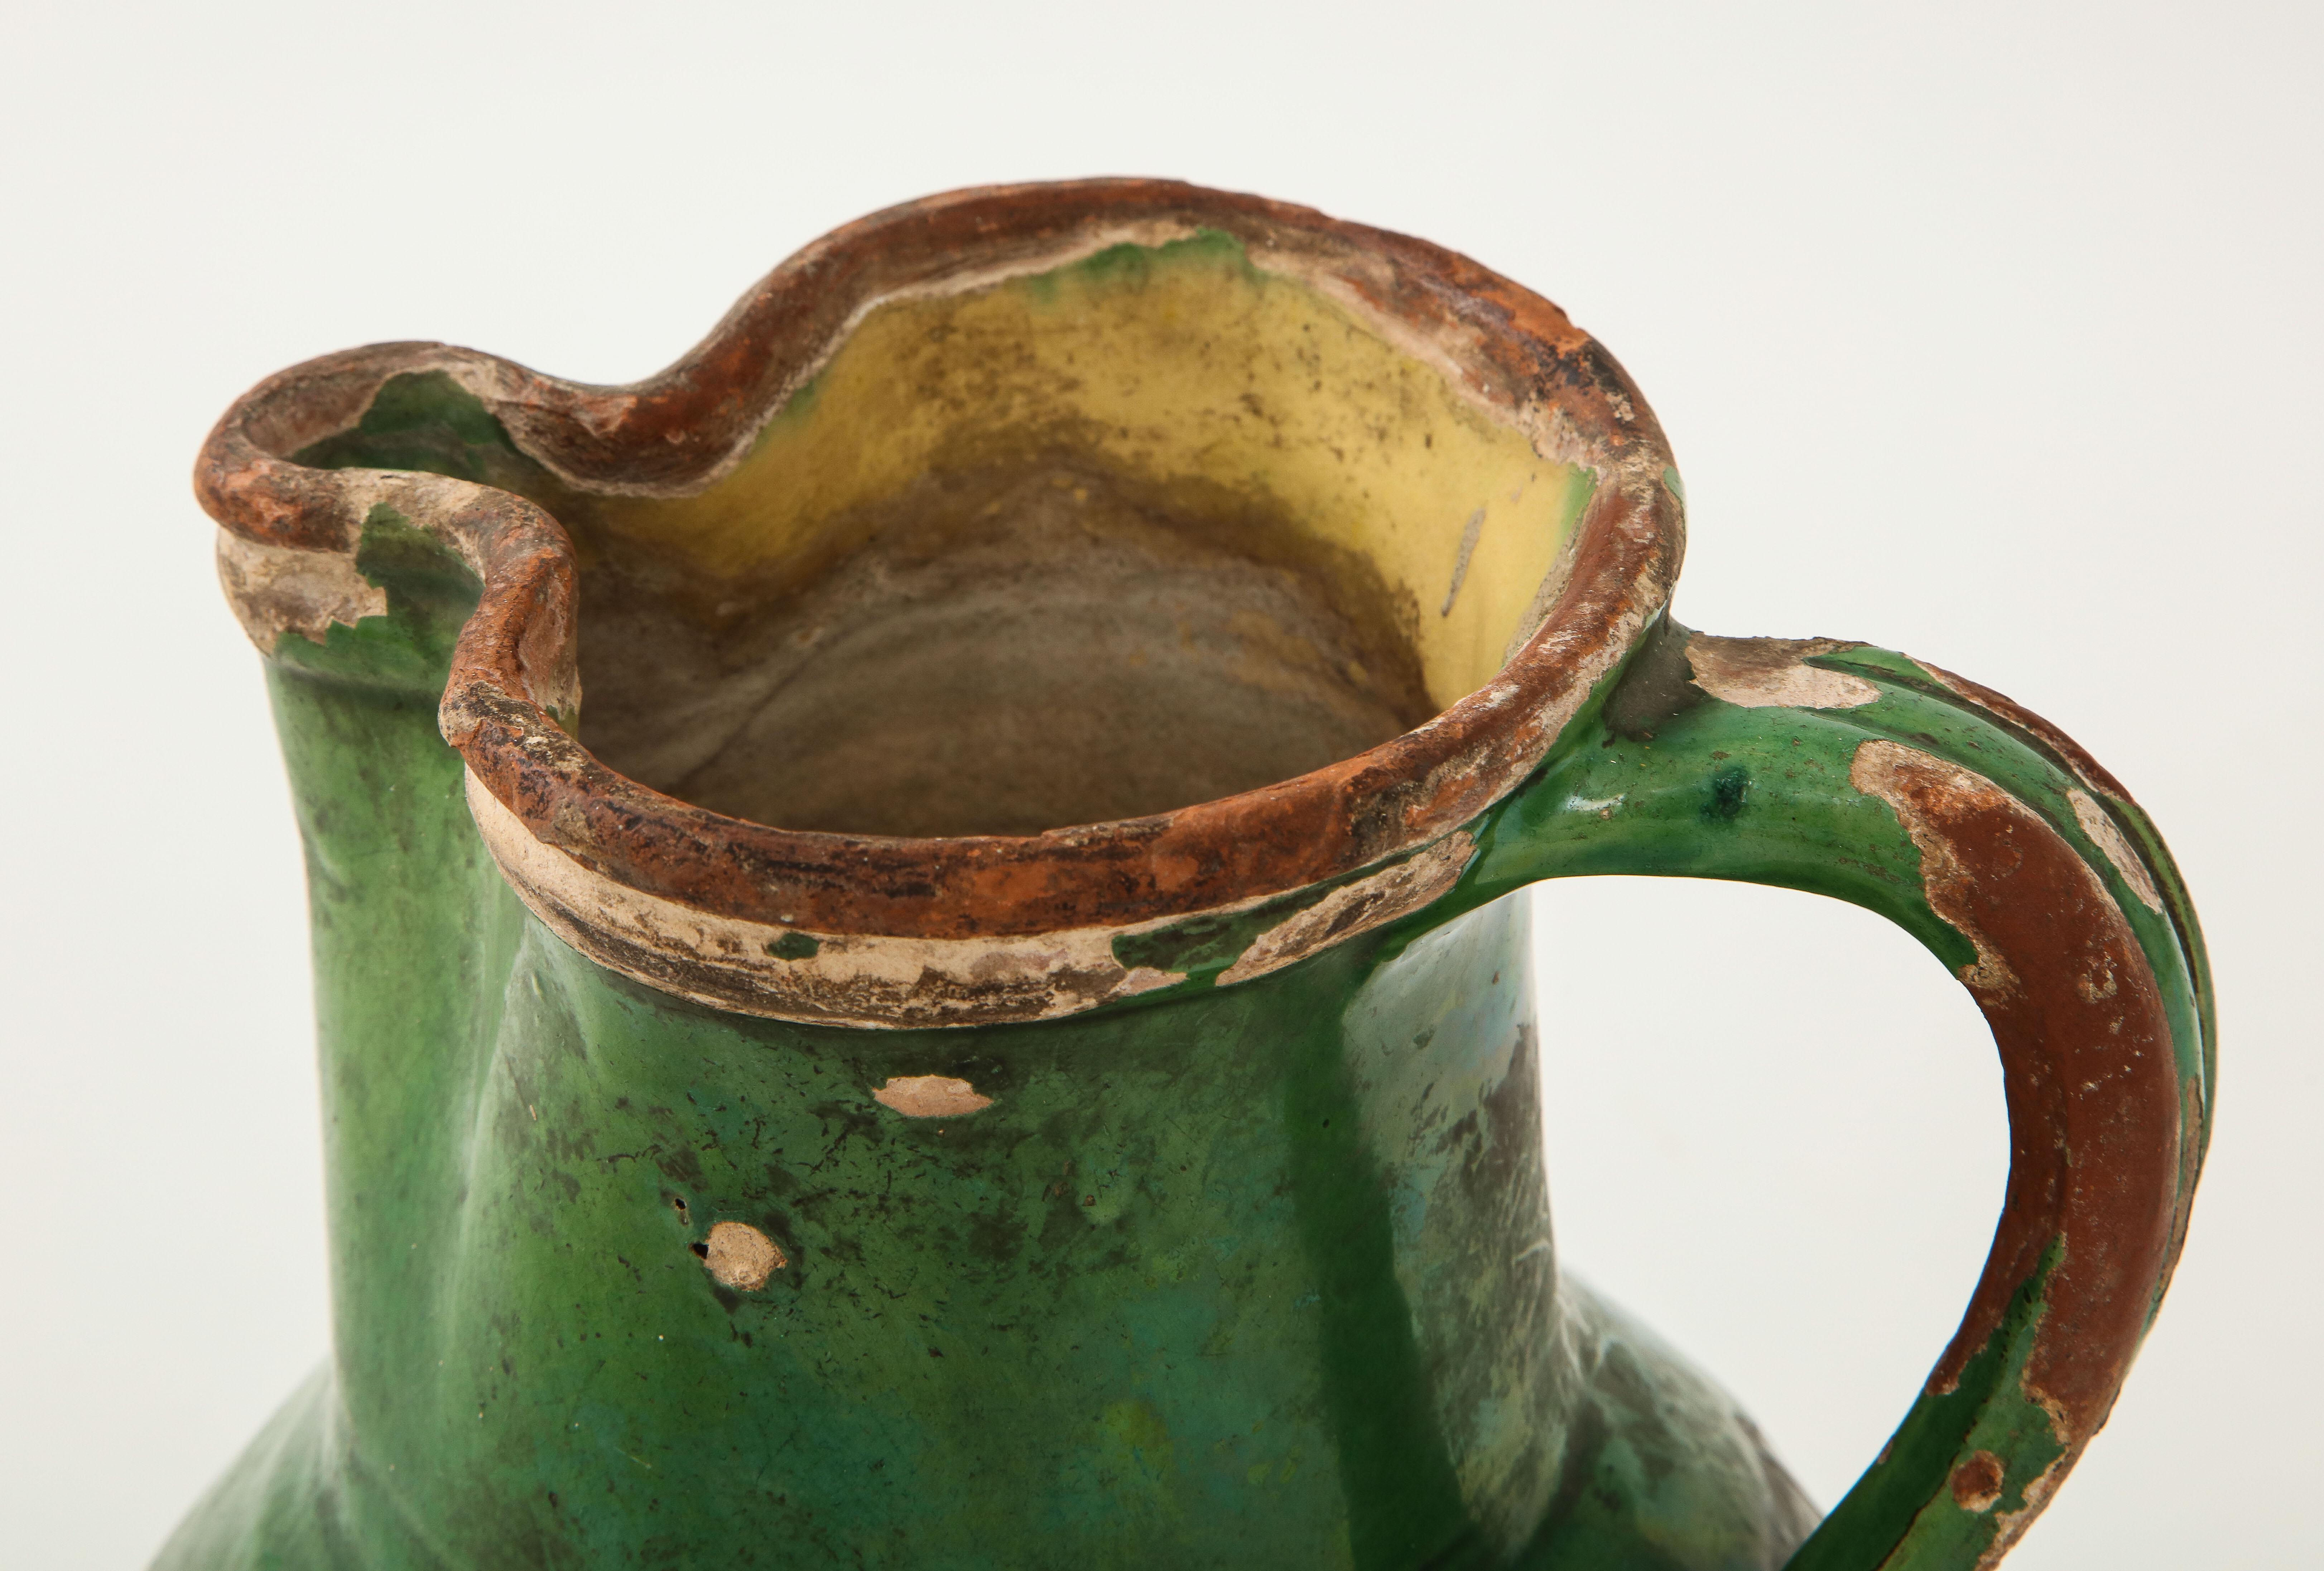 earthenware jug